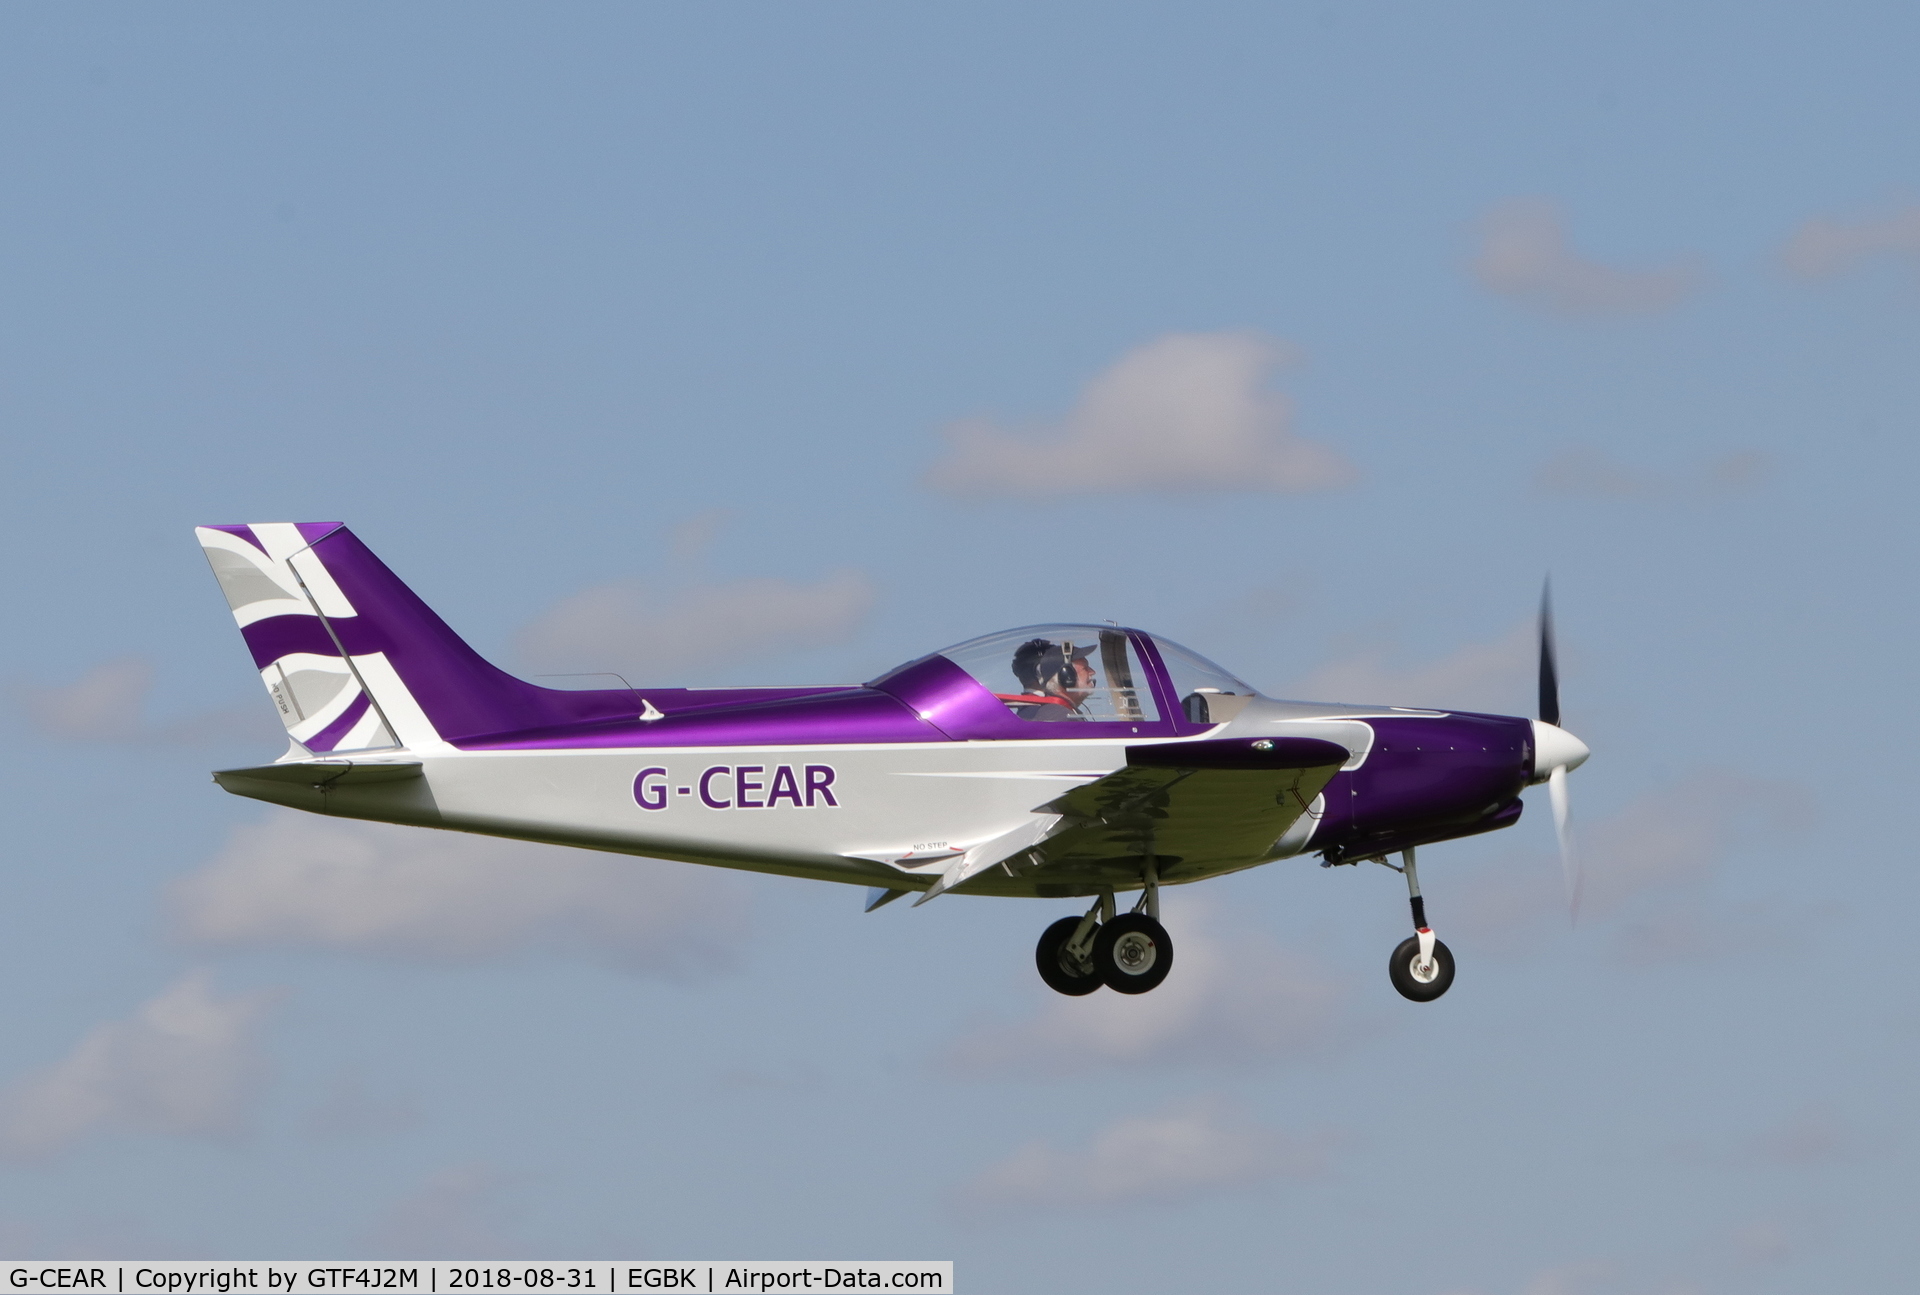 G-CEAR, 2007 Alpi Aviation Pioneer 300 C/N PFA 330-14511, G-CEAR  at Sywell 31.8.18